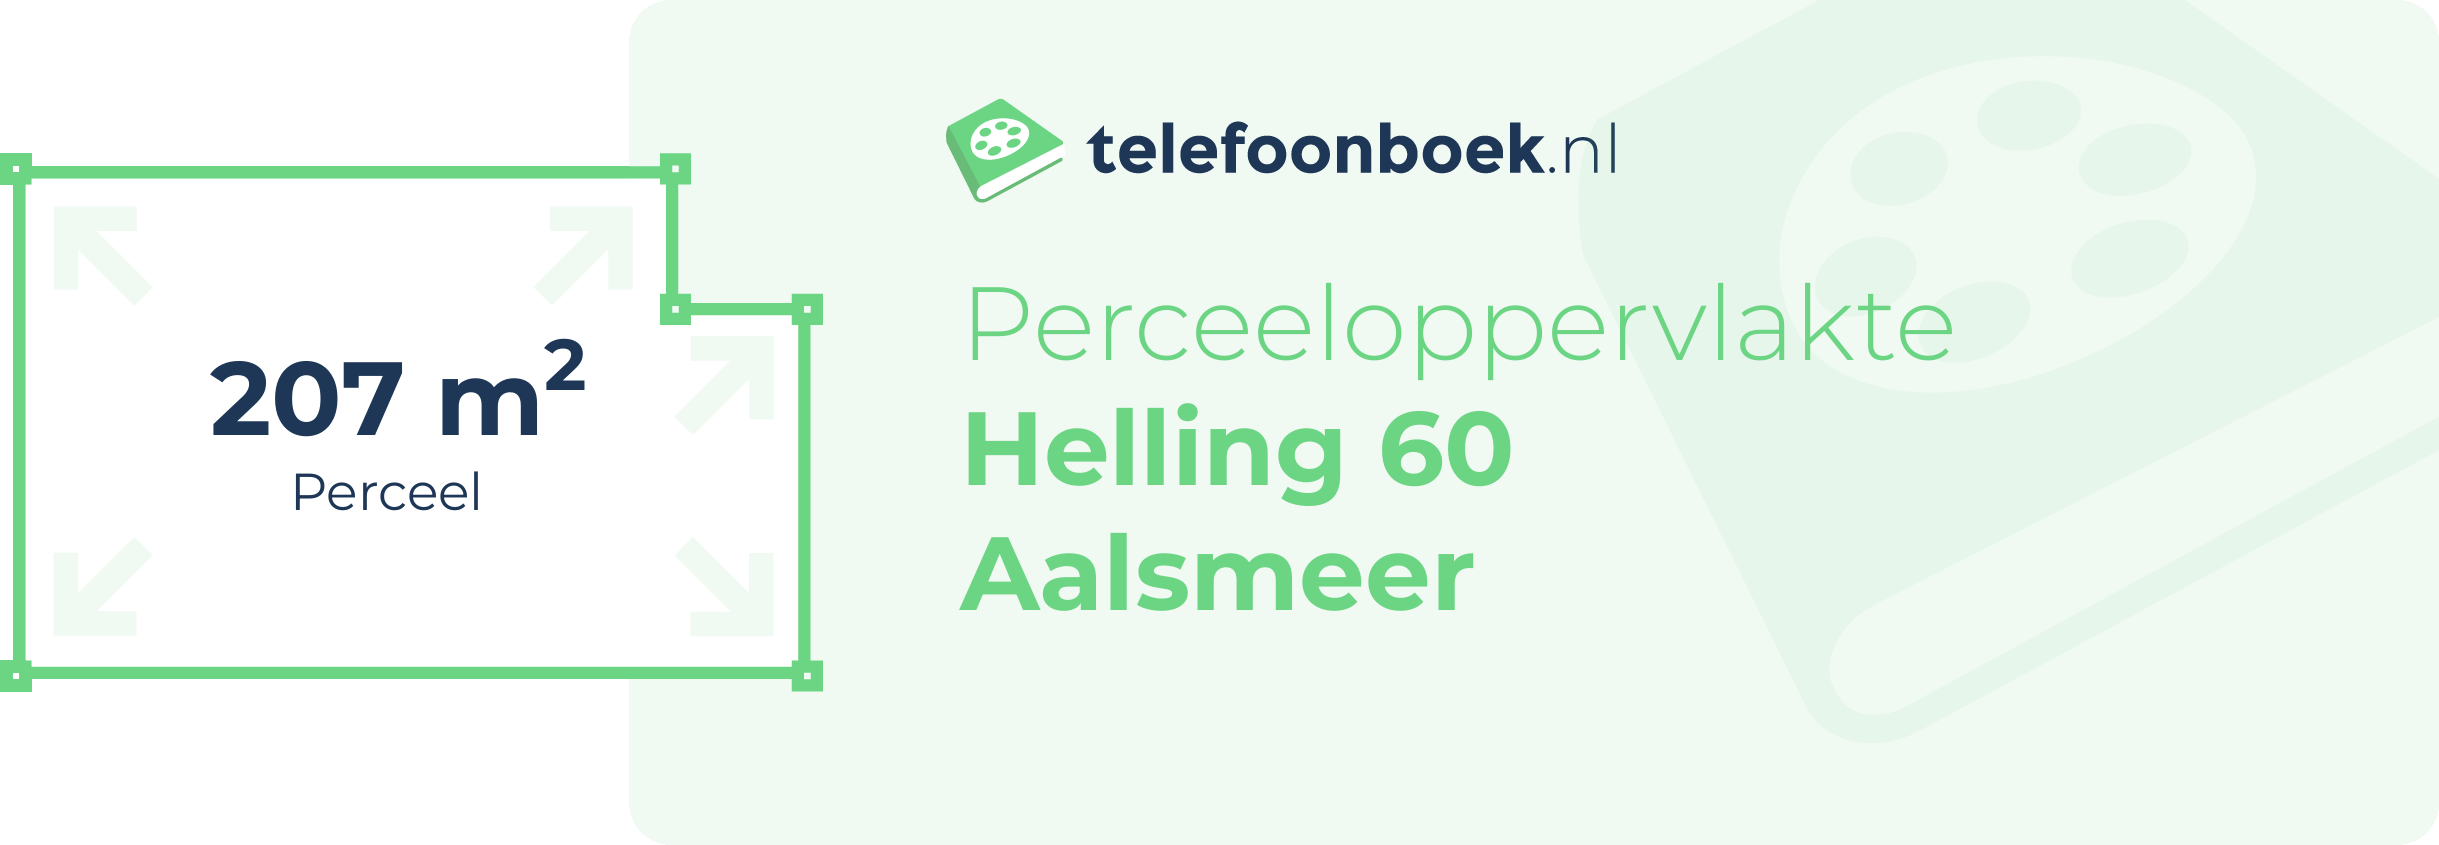 Perceeloppervlakte Helling 60 Aalsmeer